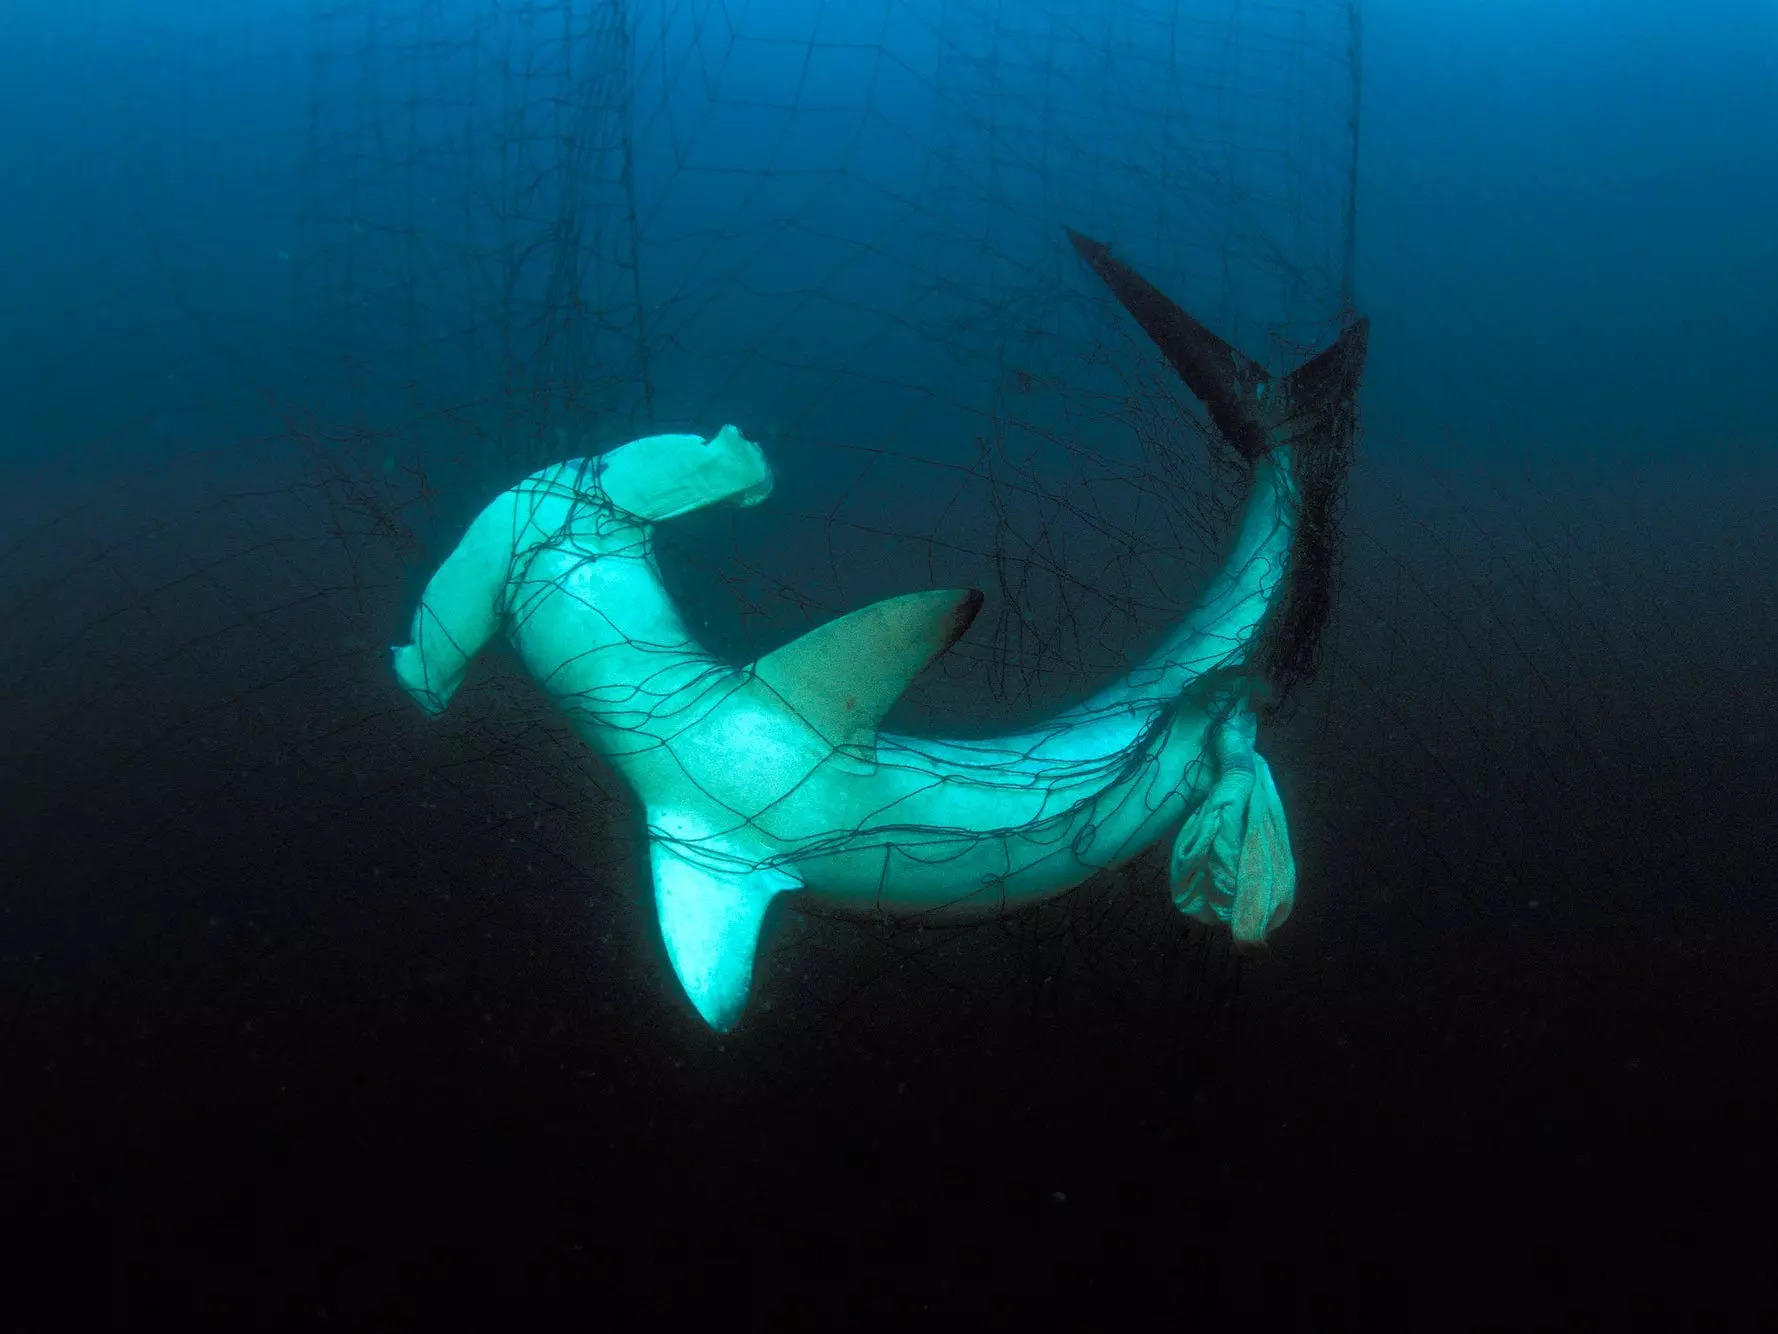 A hammerhead shark caught in a net